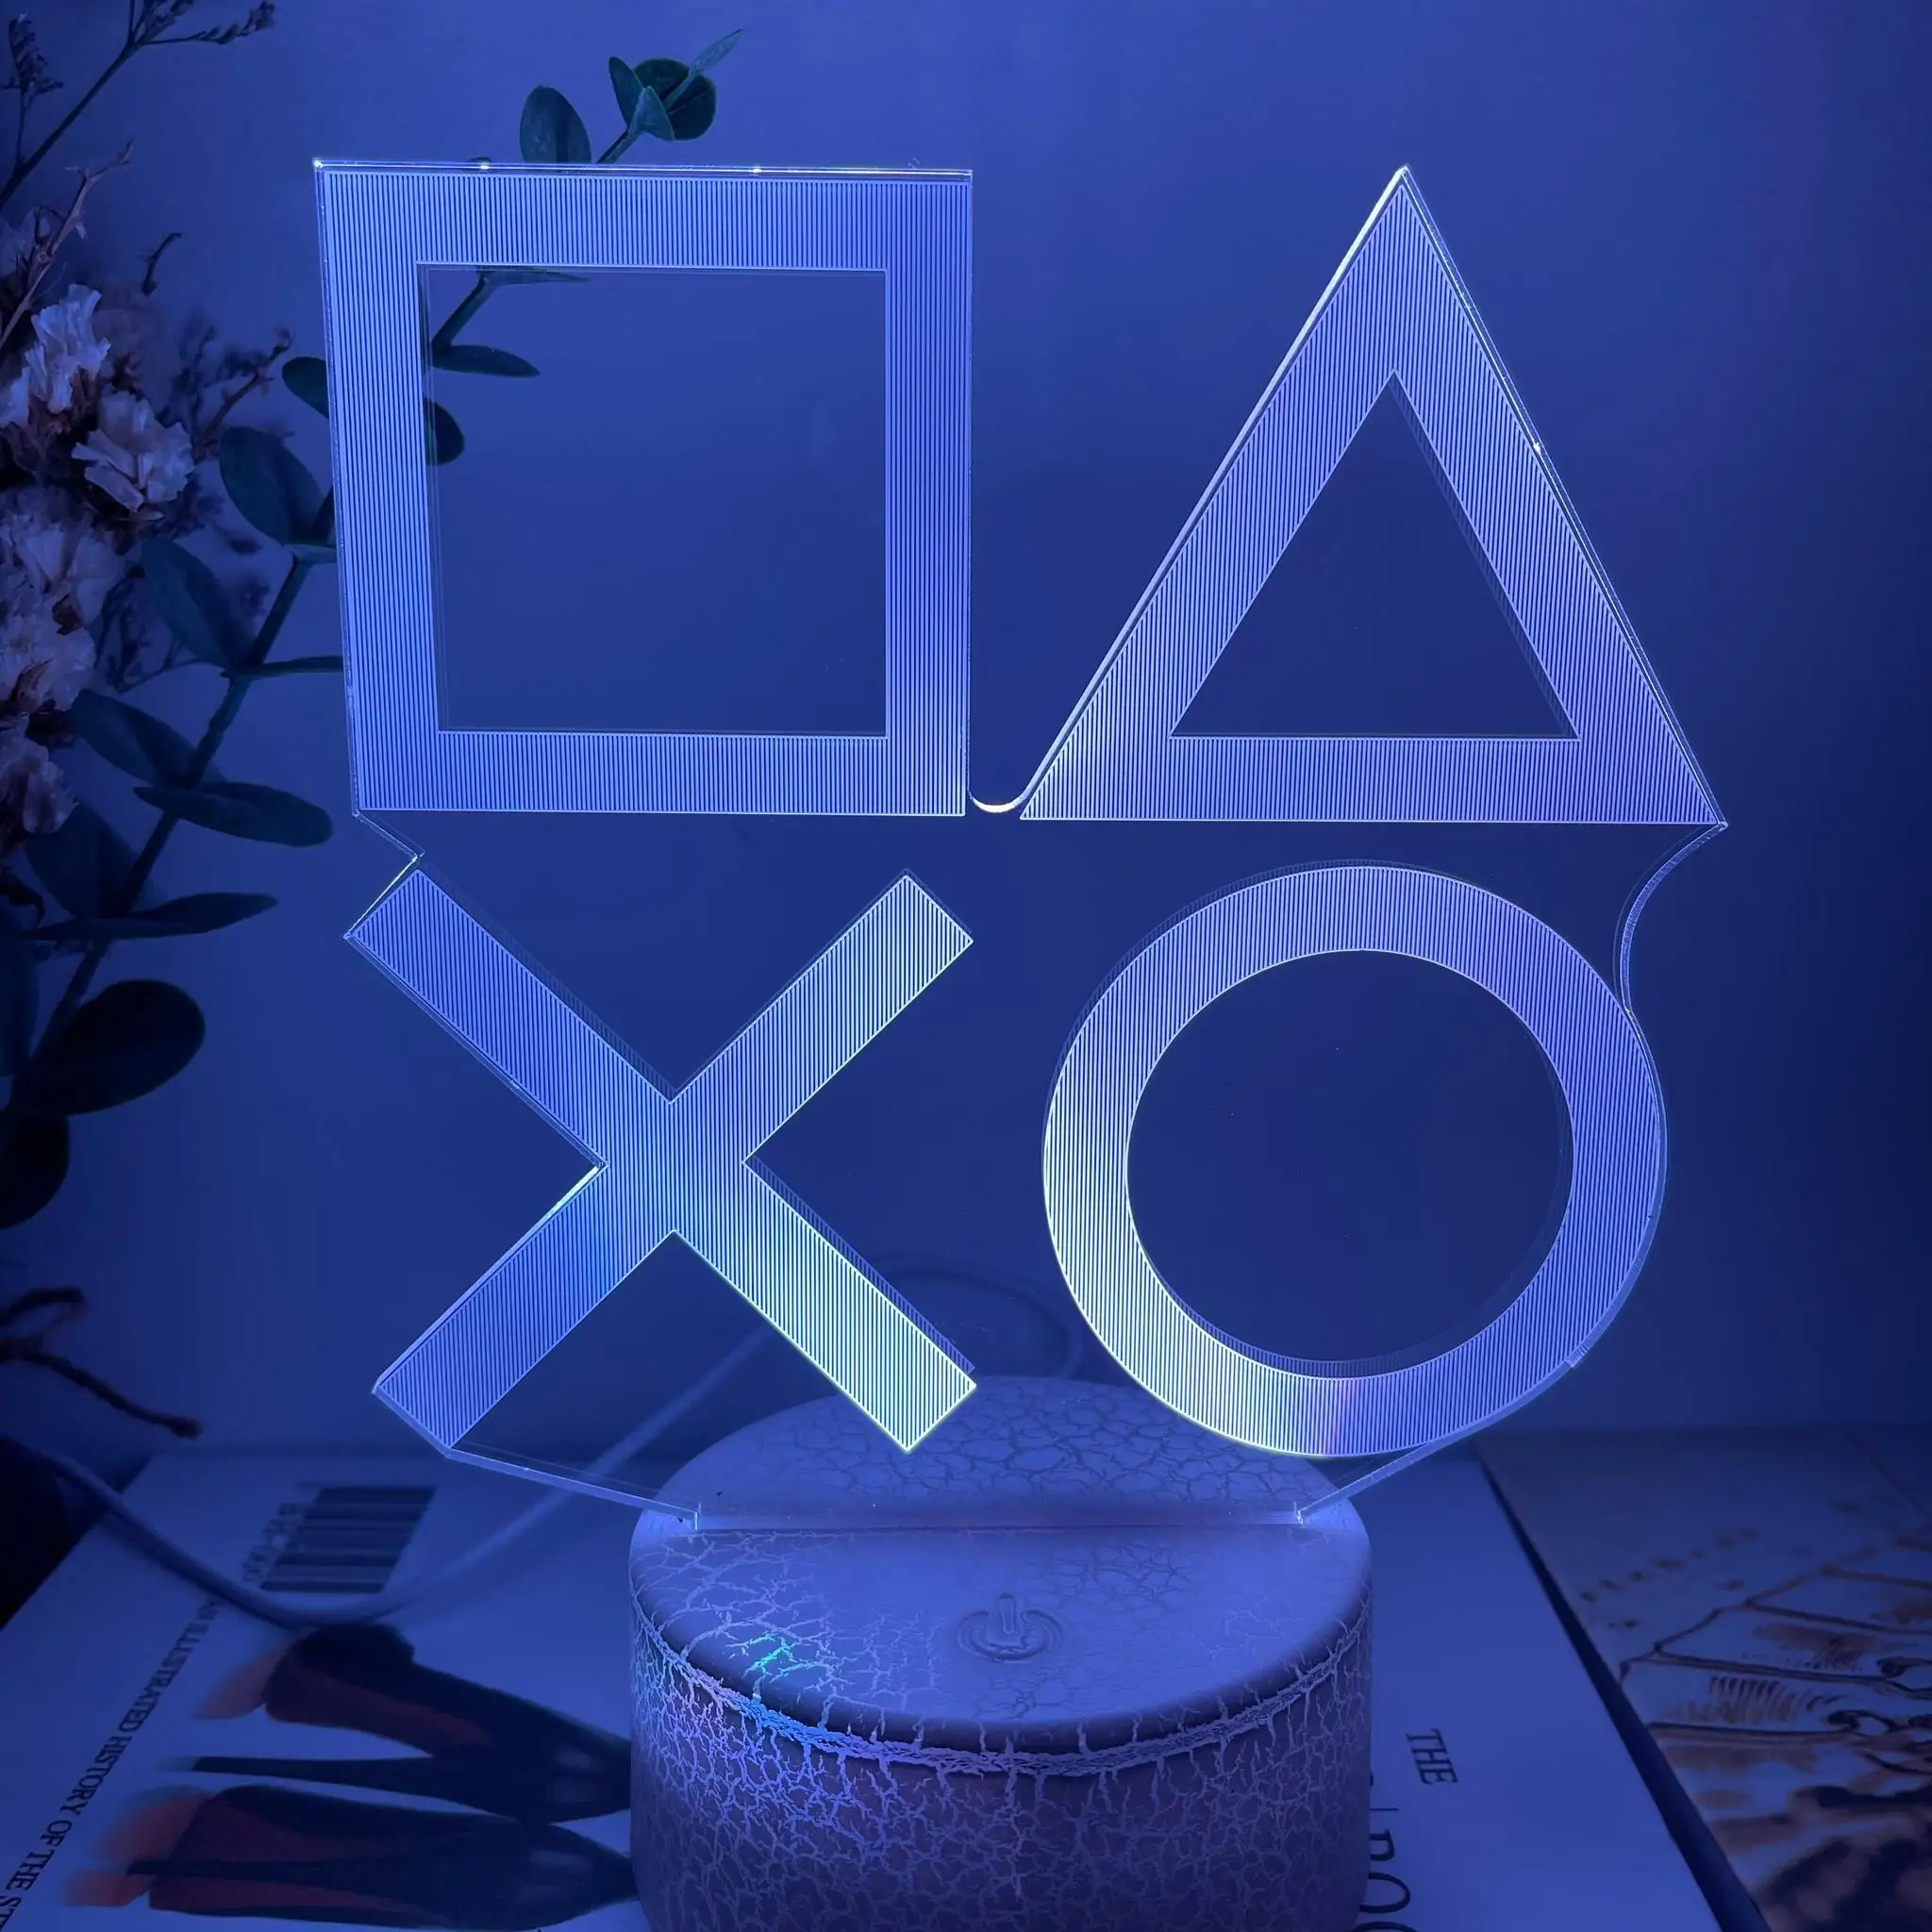 Lampe de nuit 3D avec logo Playstation pour enfants, décor d